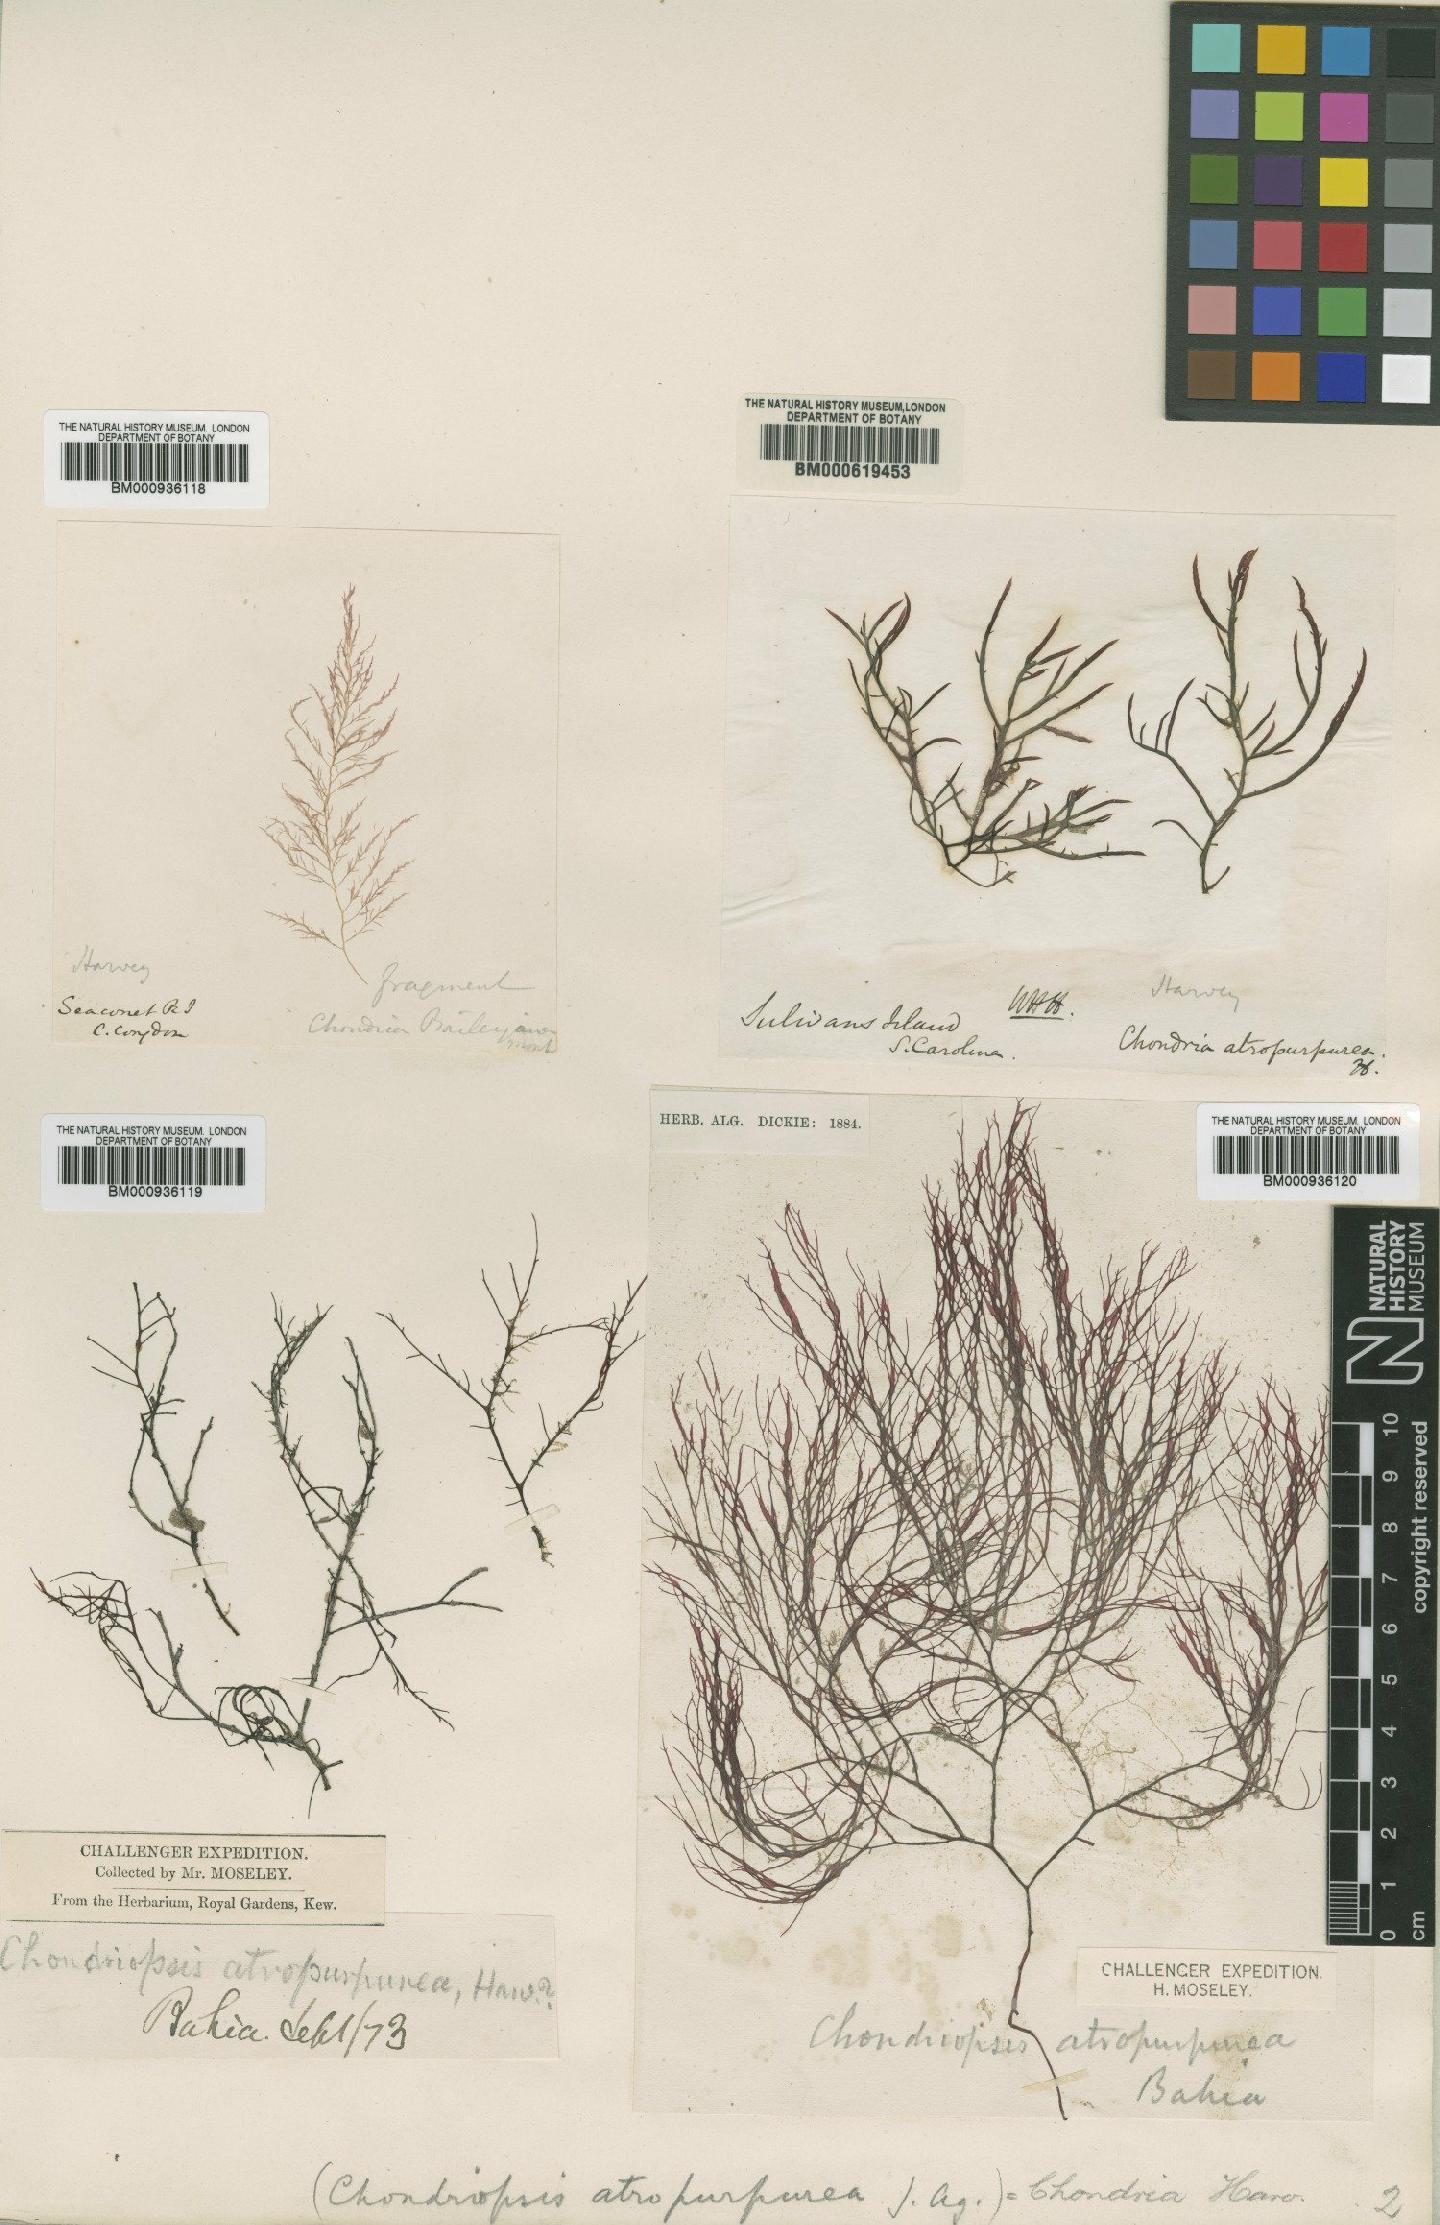 To NHMUK collection (Chondria atropurpurea Harvey; TYPE; NHMUK:ecatalogue:435219)